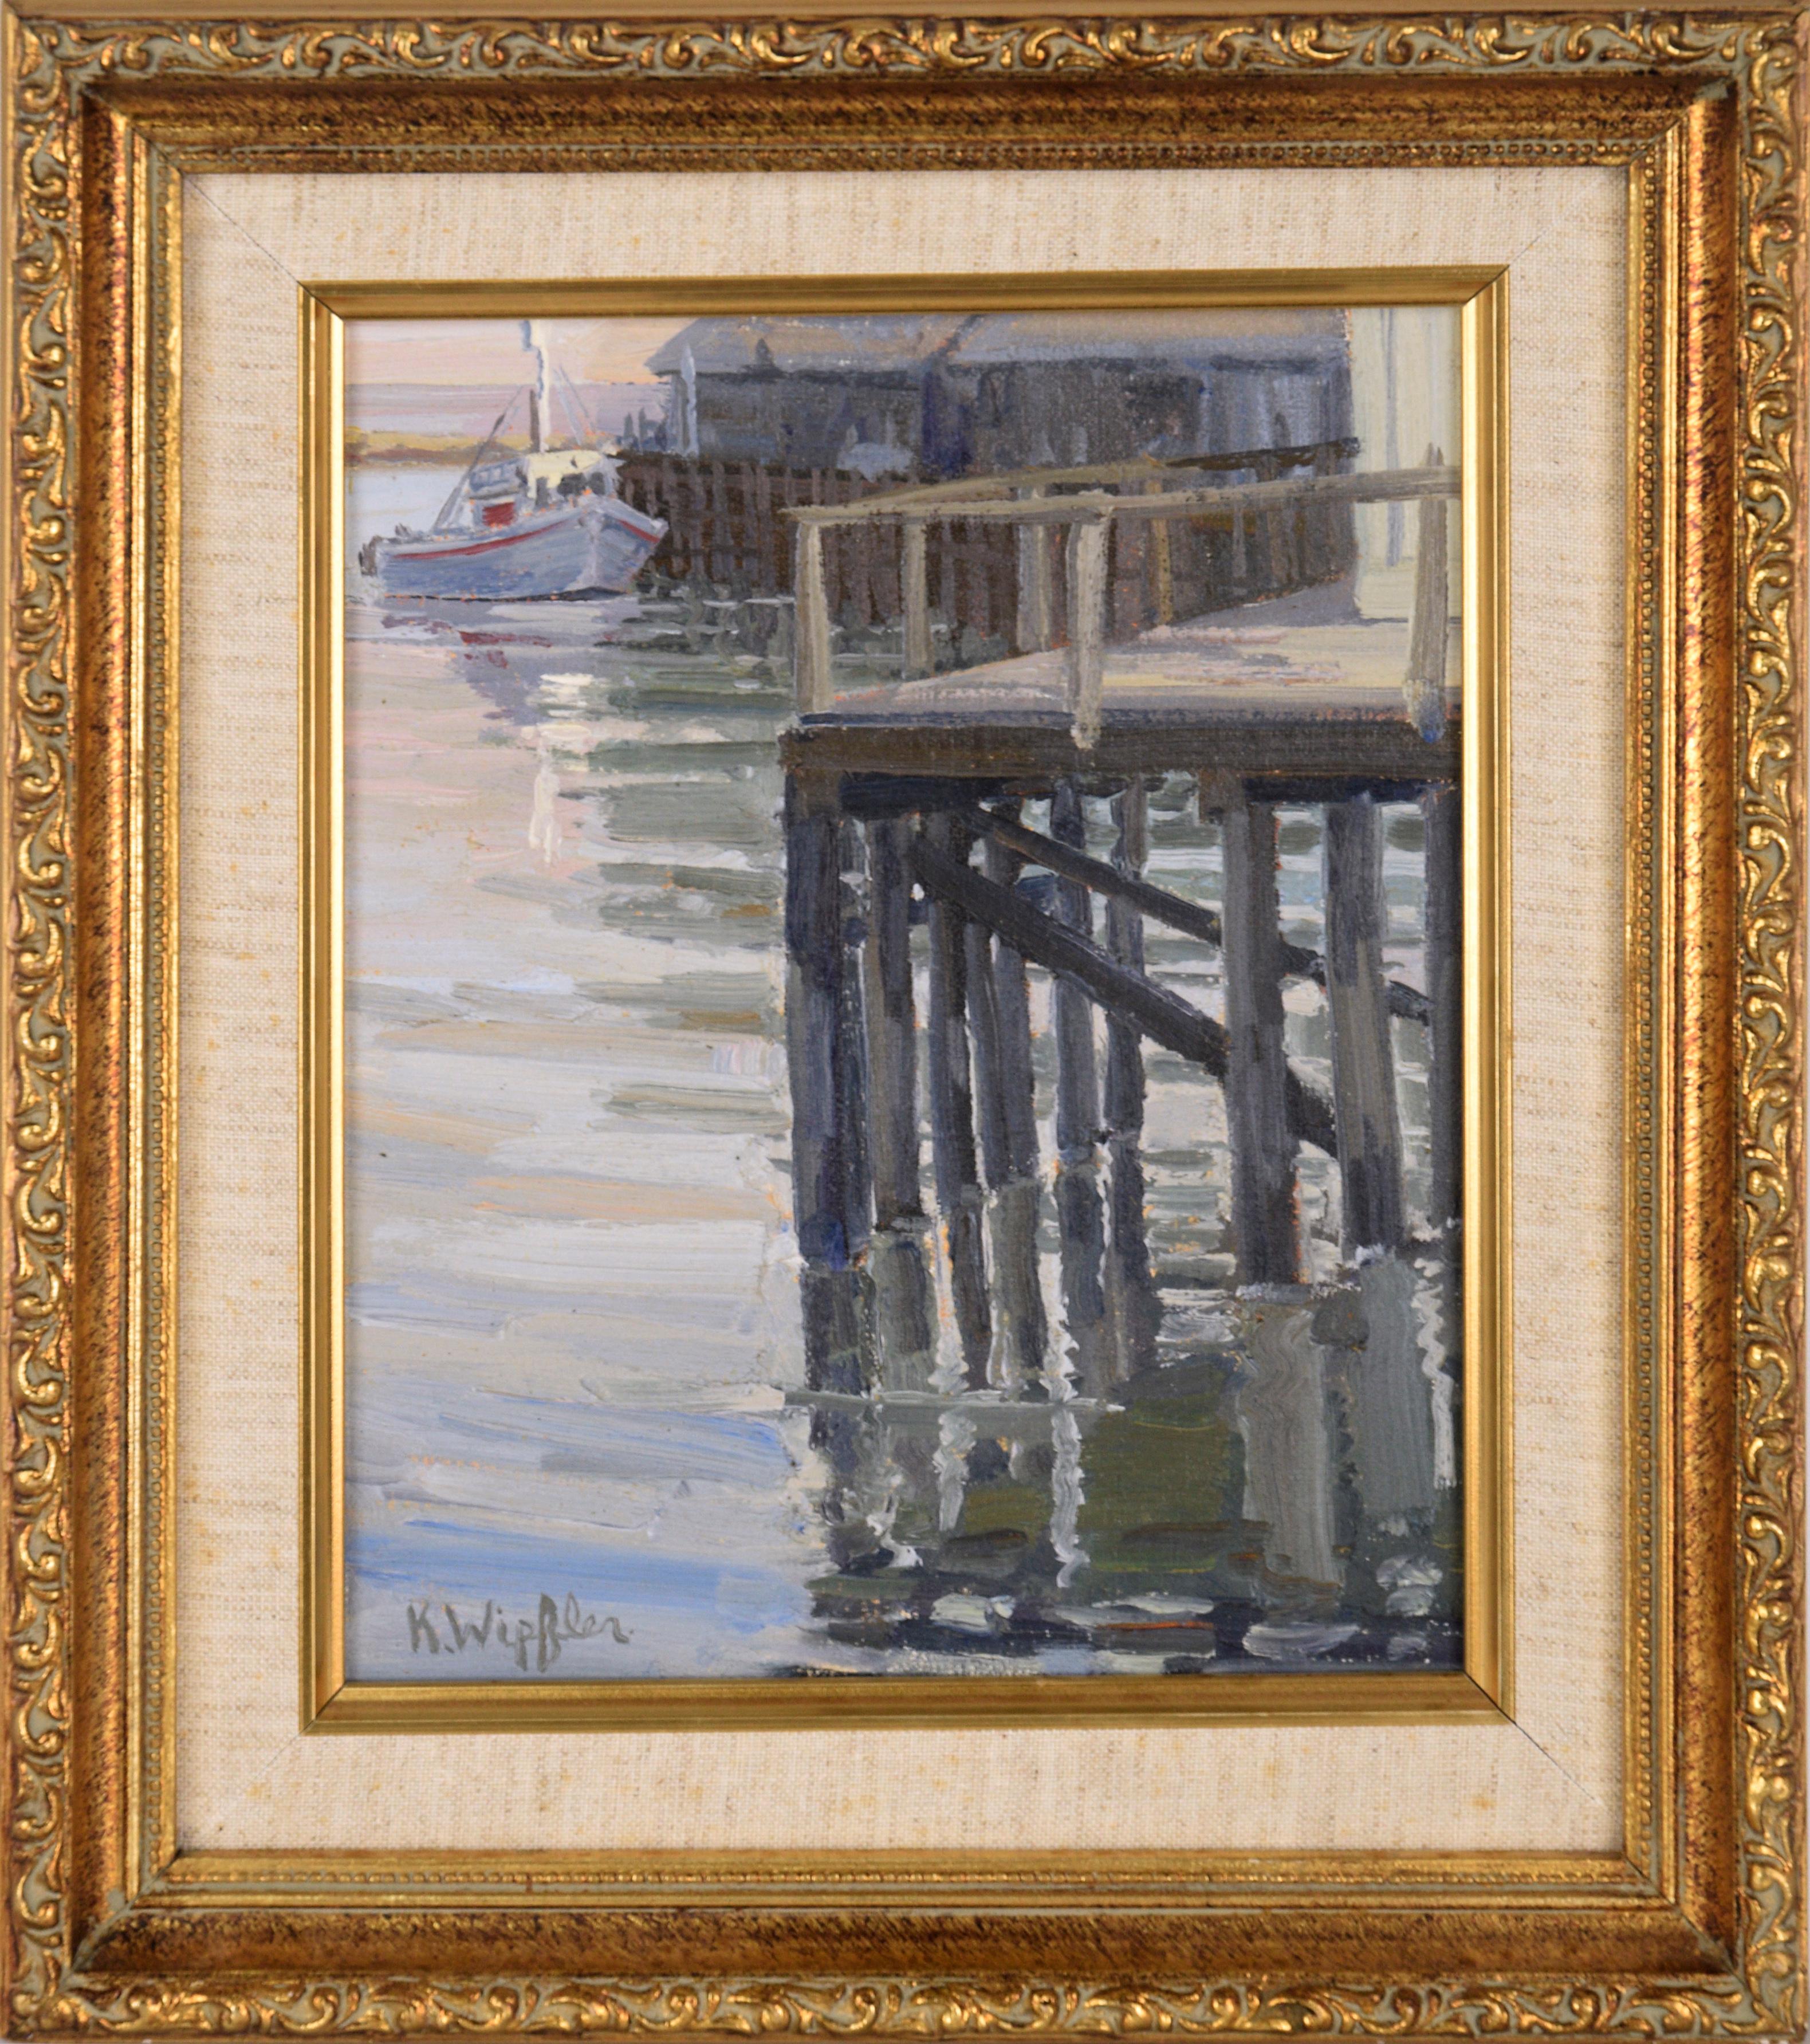 Landscape Painting Katherine Wipfler - Paysage marin en plein air du bateau de la baie de Monterey